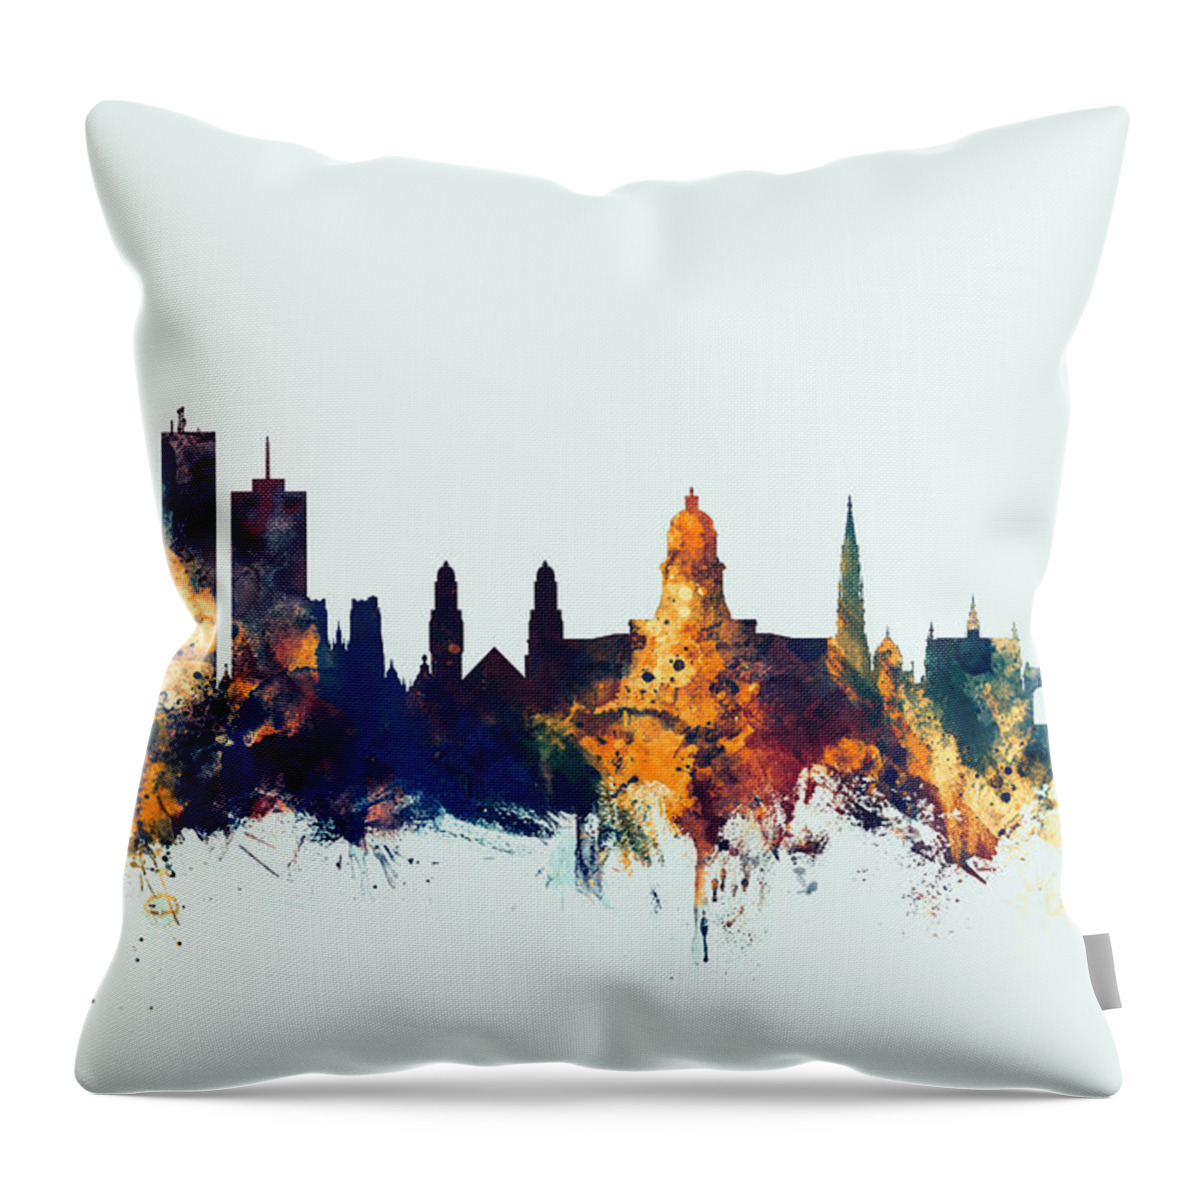 Brussels Throw Pillow featuring the digital art Brussels Belgium Skyline #4 by Michael Tompsett